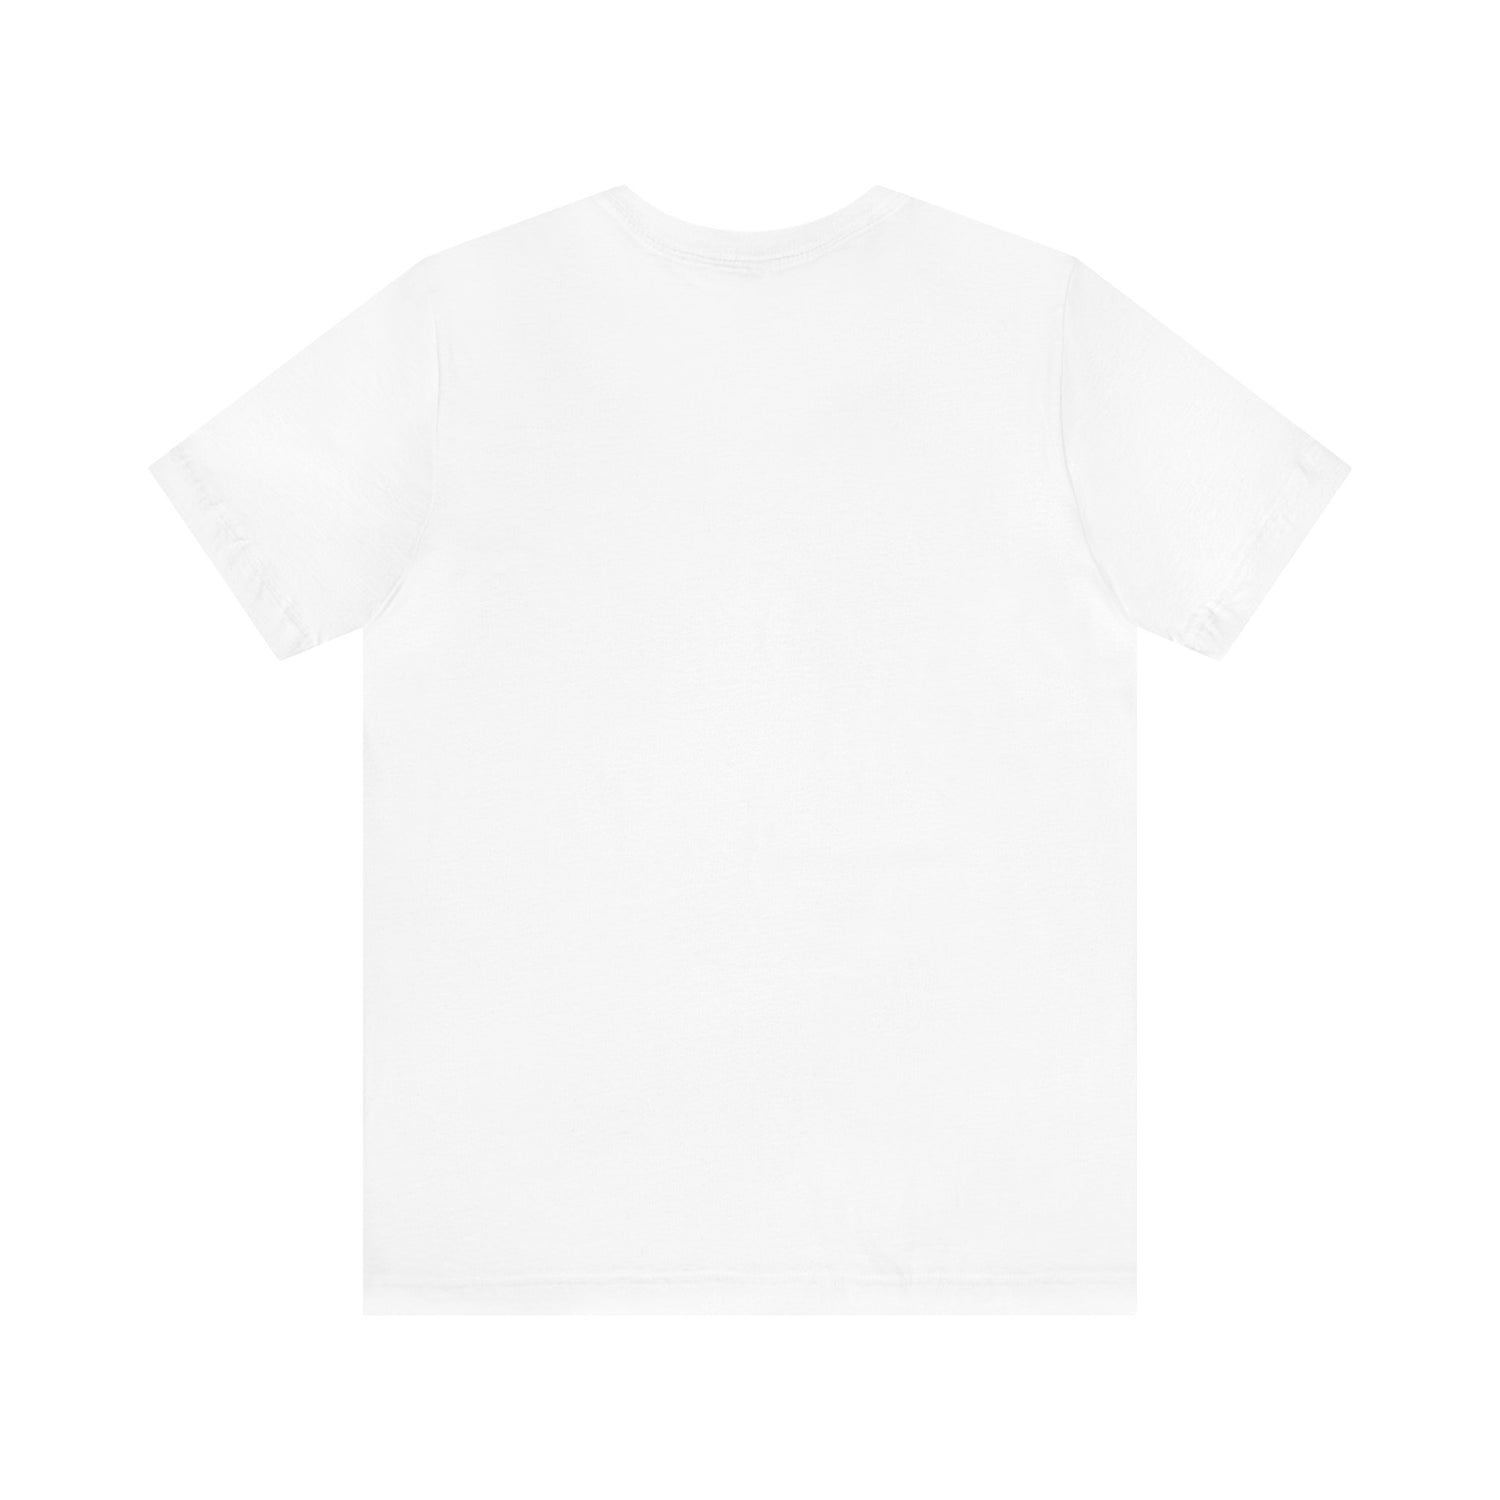 Quilter T-Shirt | Quilter Gift Idea T-Shirt Petrova Designs